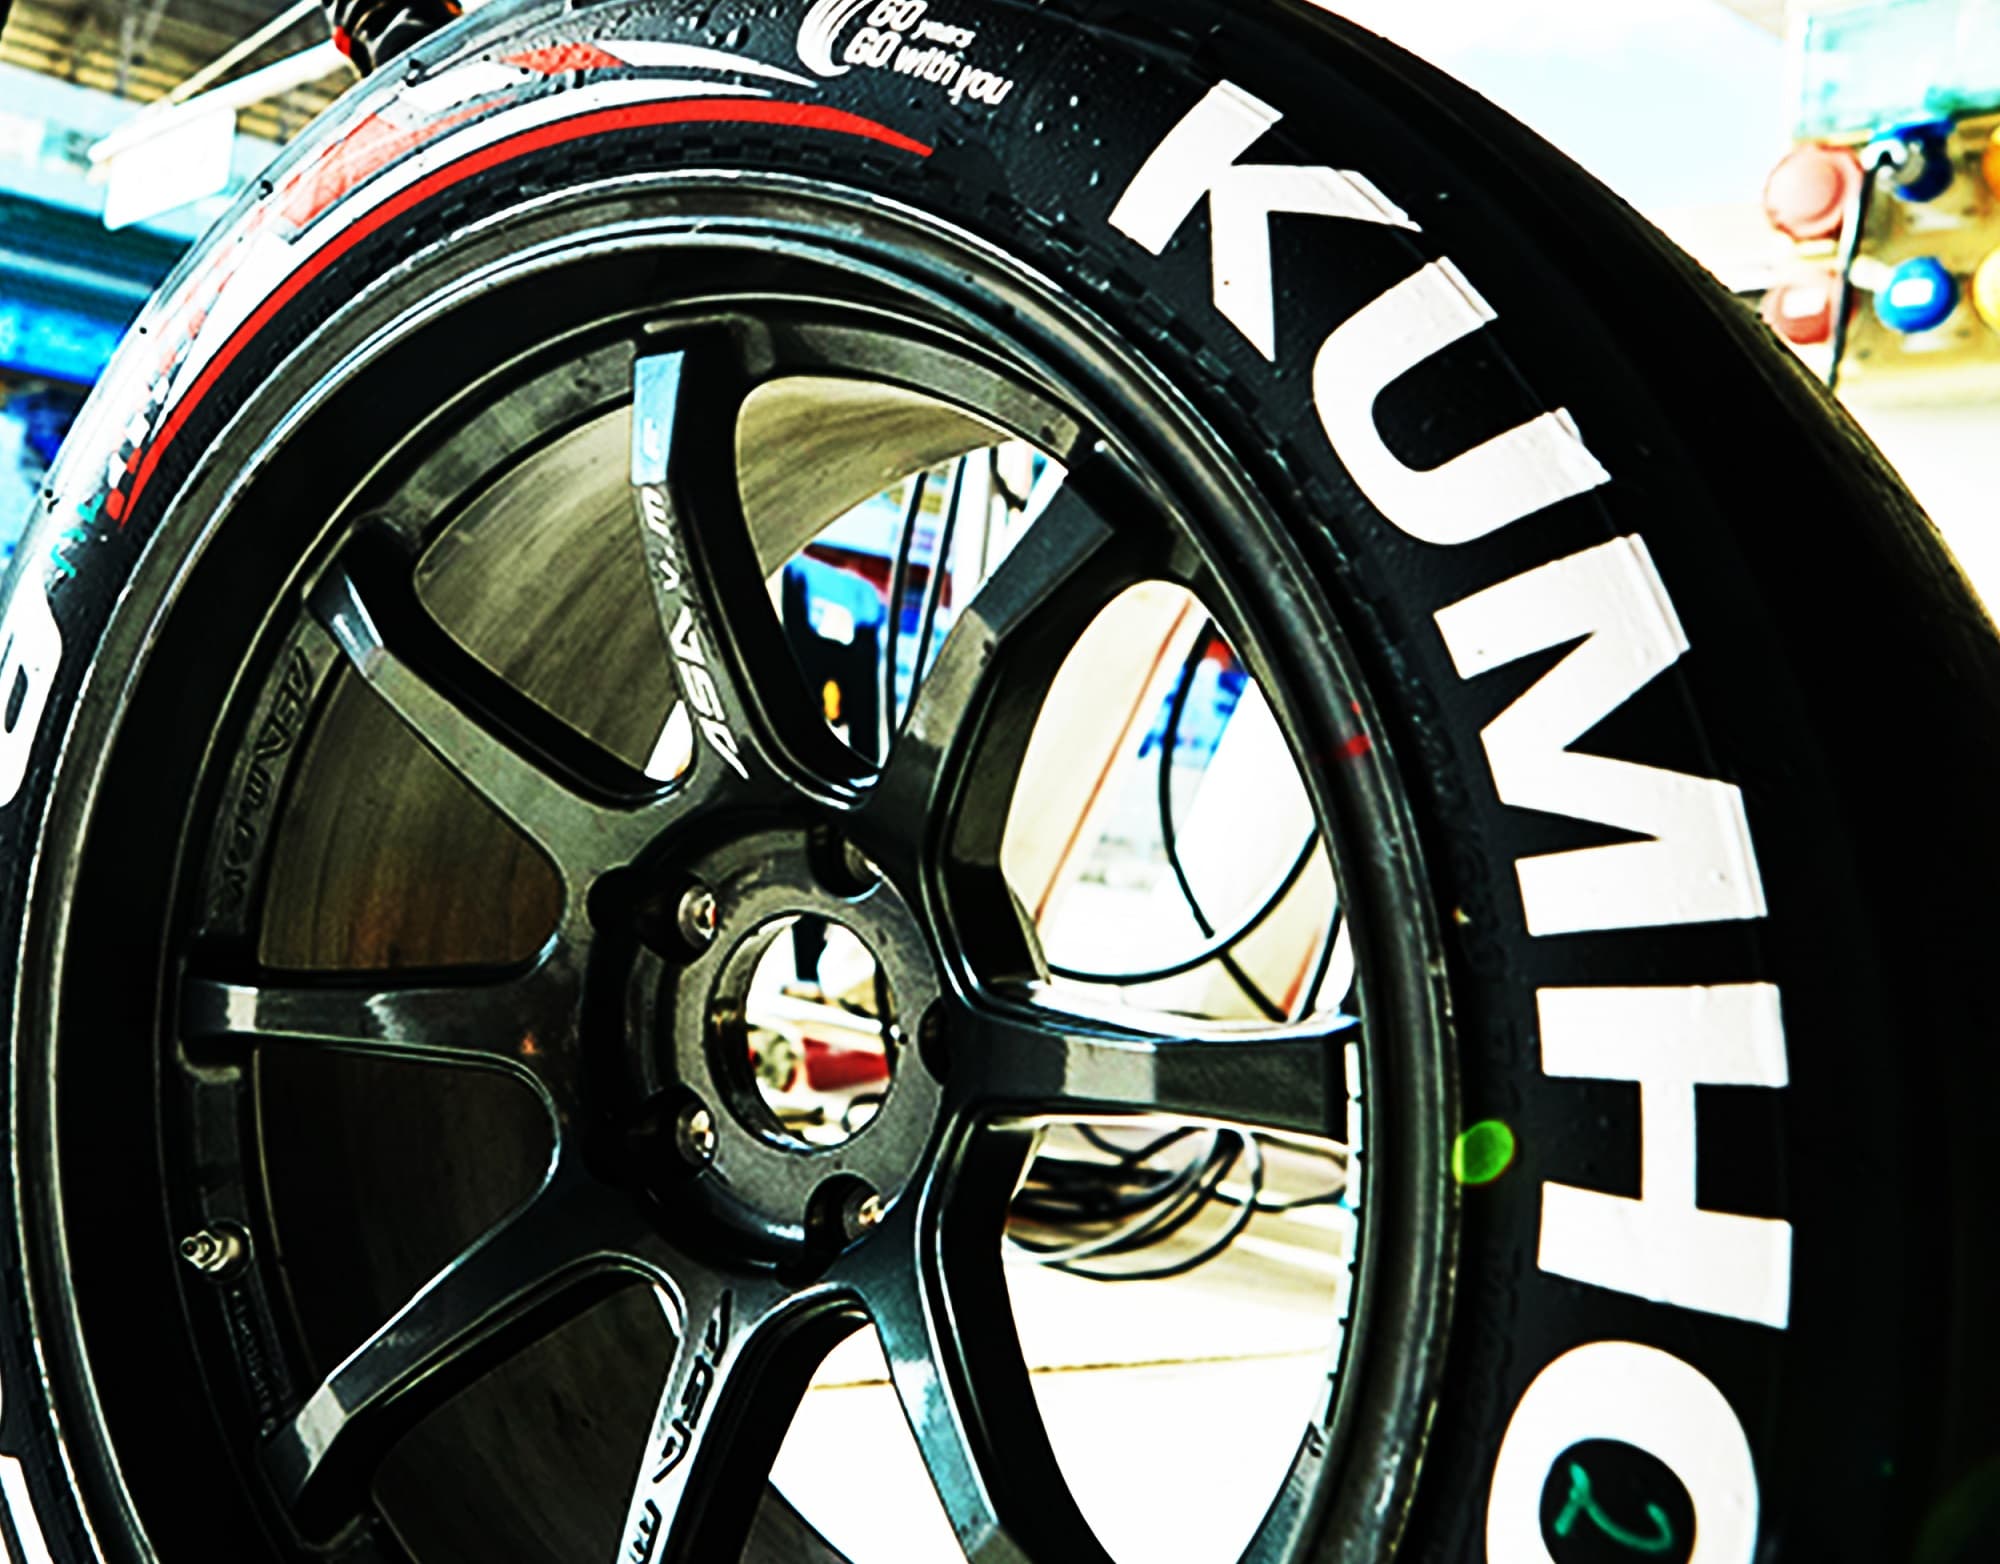 Neumáticos Kumho: características y opiniones